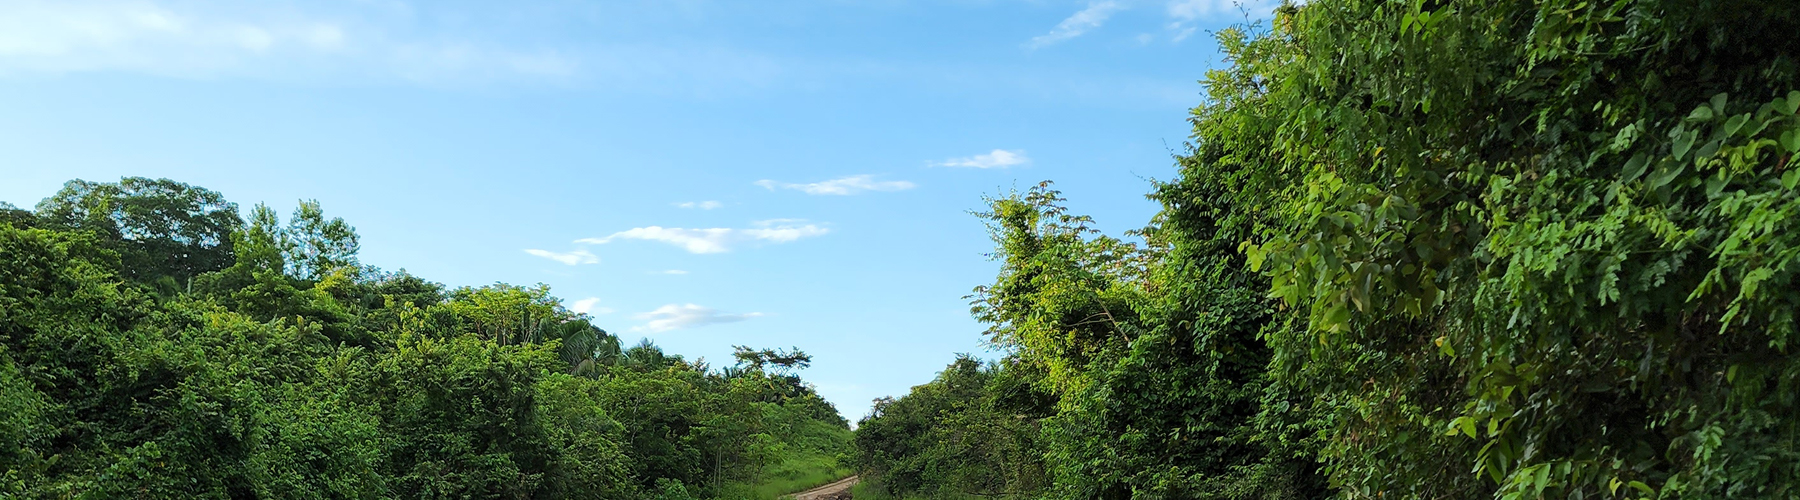 Belize Karst Habitat Conservation forest